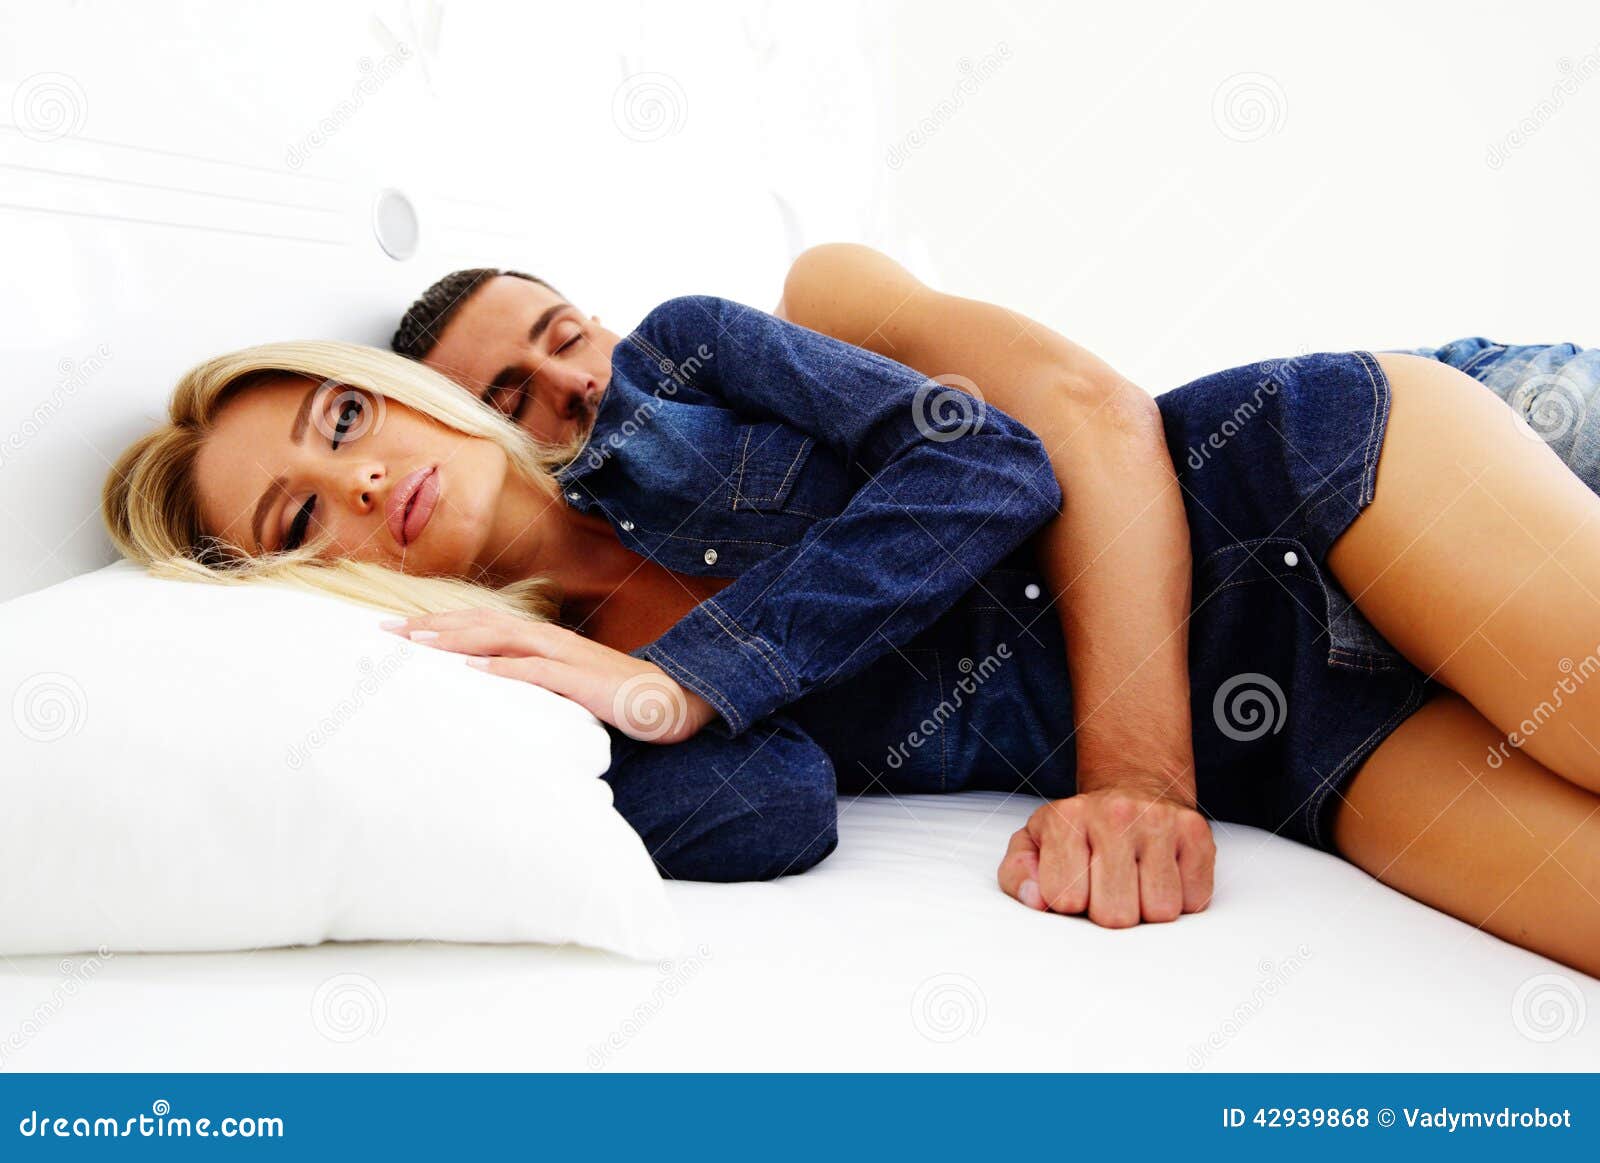 Расслабилась с другом. Молодая пара в кровати. Расслабленная молодая пара в постели. Подростки парочка в постели. Расслабленная молодая пара в белье.